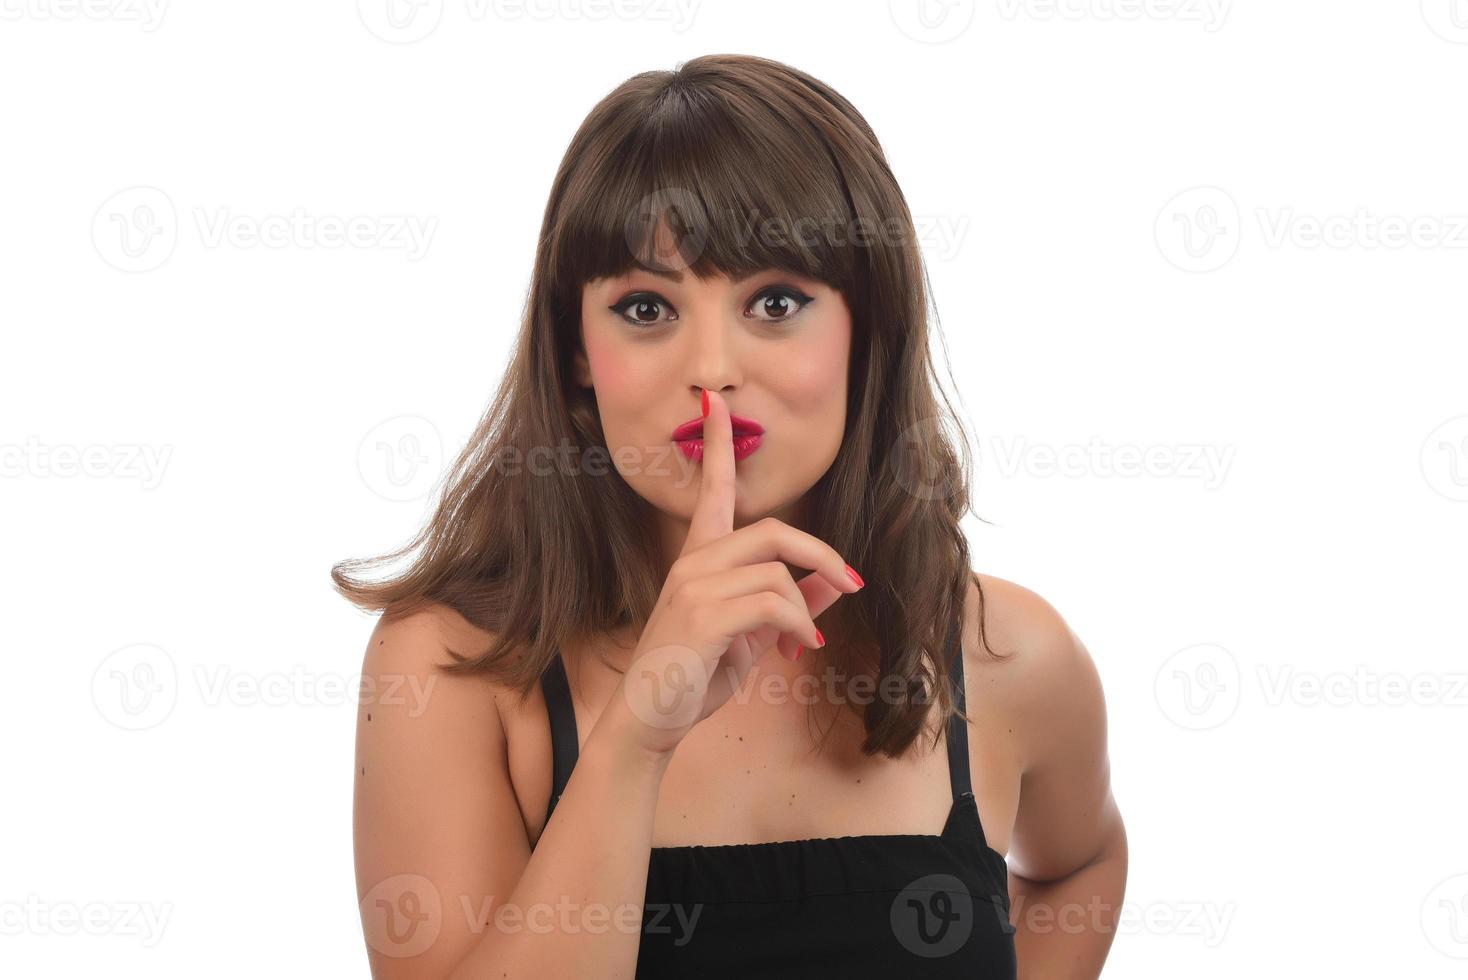 finger på läppar - tyst gest, kvinna håller fingret mot läpparna i en gest för tystnad. foto